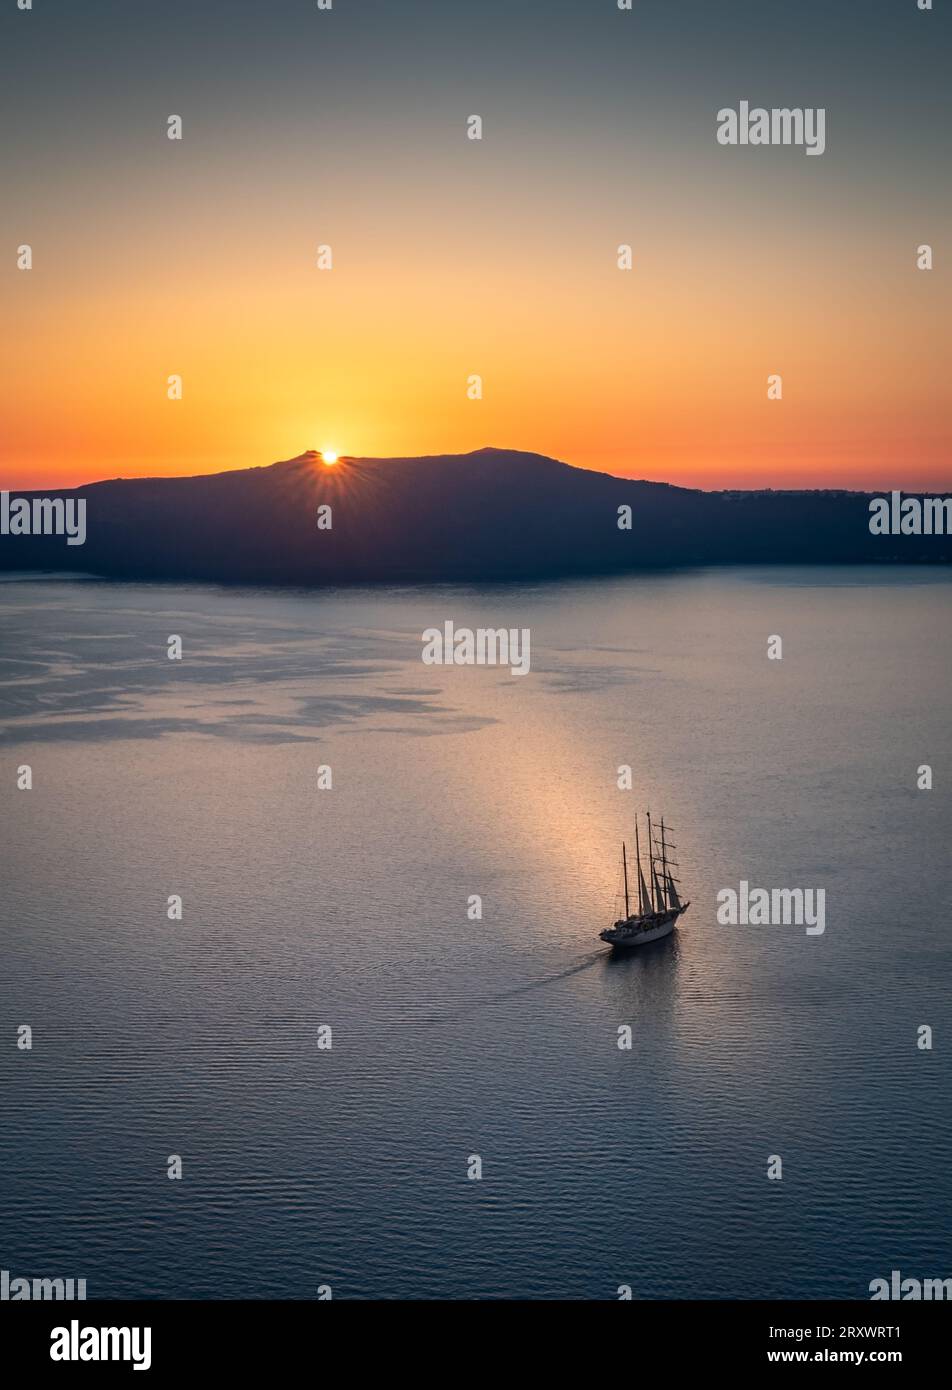 La baia al largo di Thera, Santorini, con il sole che tramonta dietro l'isola di Thirasia, il cielo limpido e dorato e la barca a vela alberata nel mezzo della baia Foto Stock